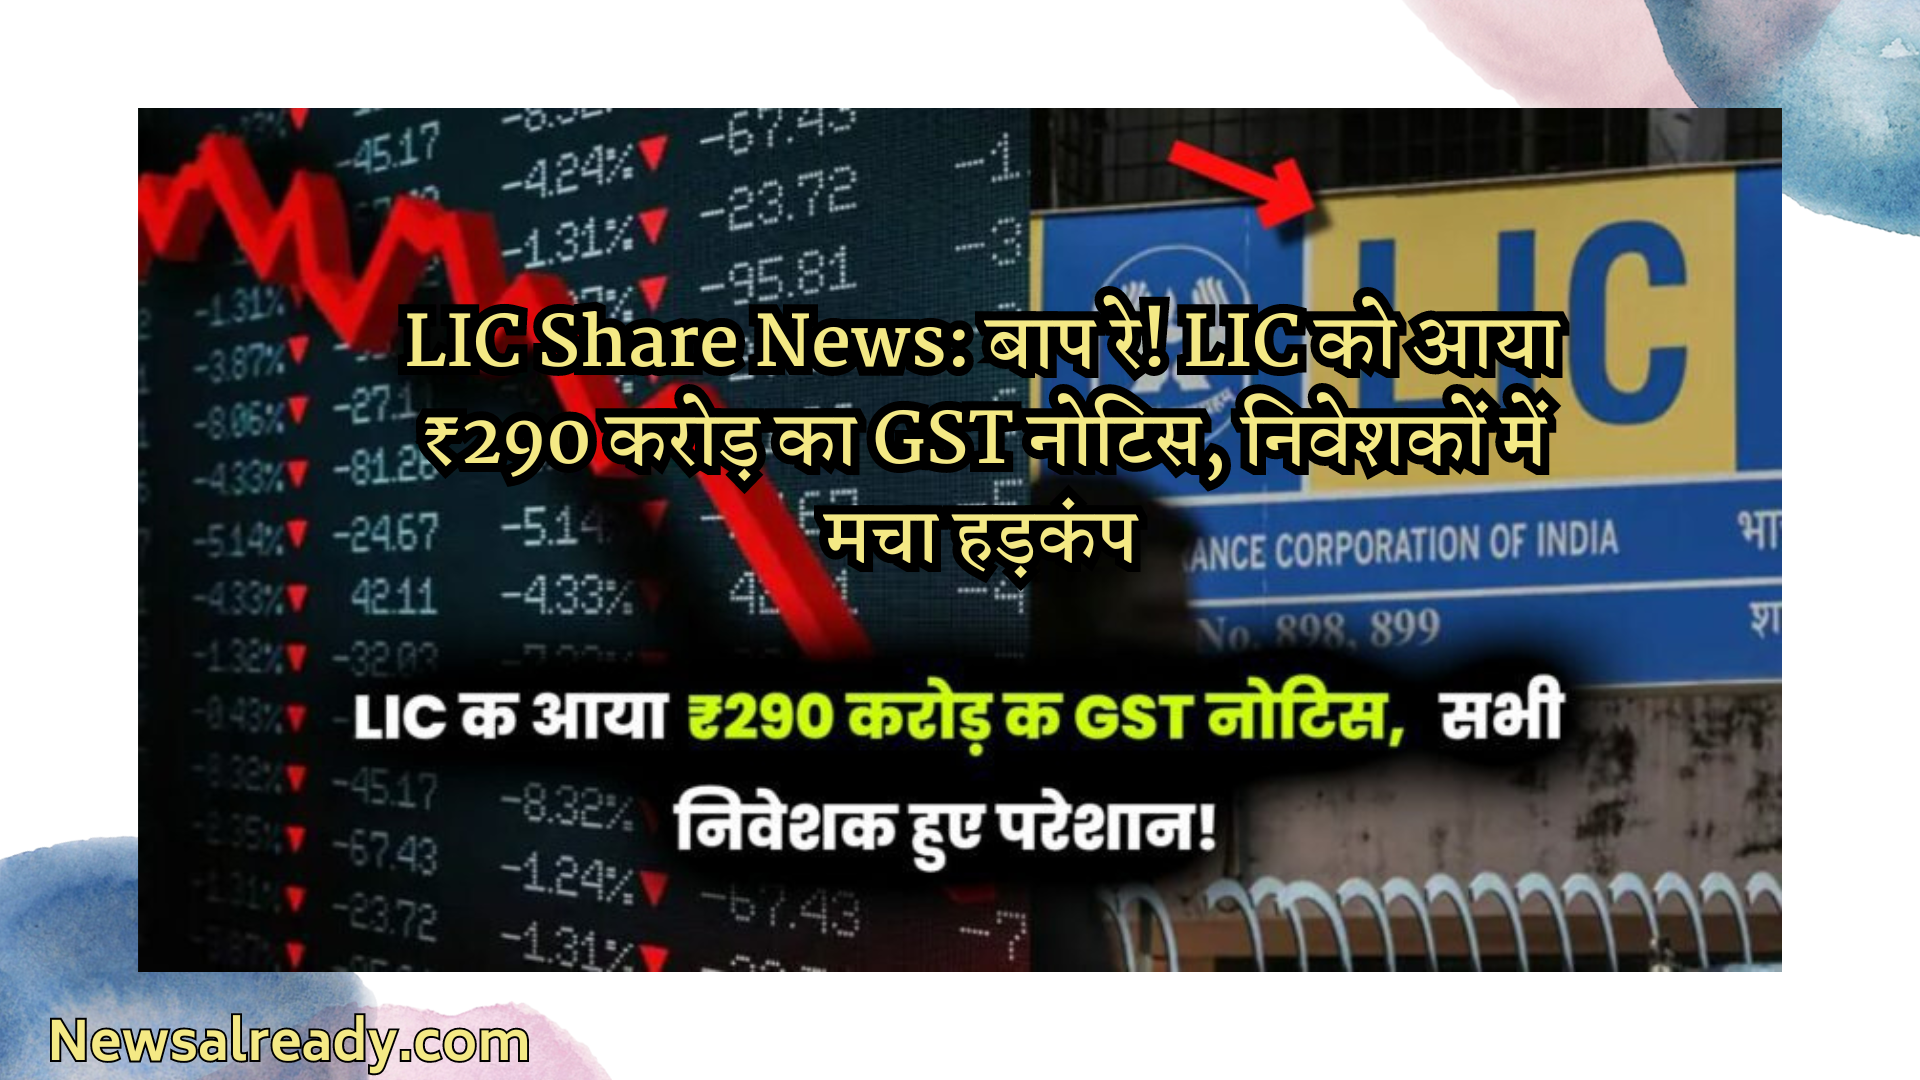 LIC Share News: पिता! एलआईसी को 290 करोड़ रुपये का जीएसटी नोटिफिकेशन मिला तो निवेशकों में हड़कंप मच गया